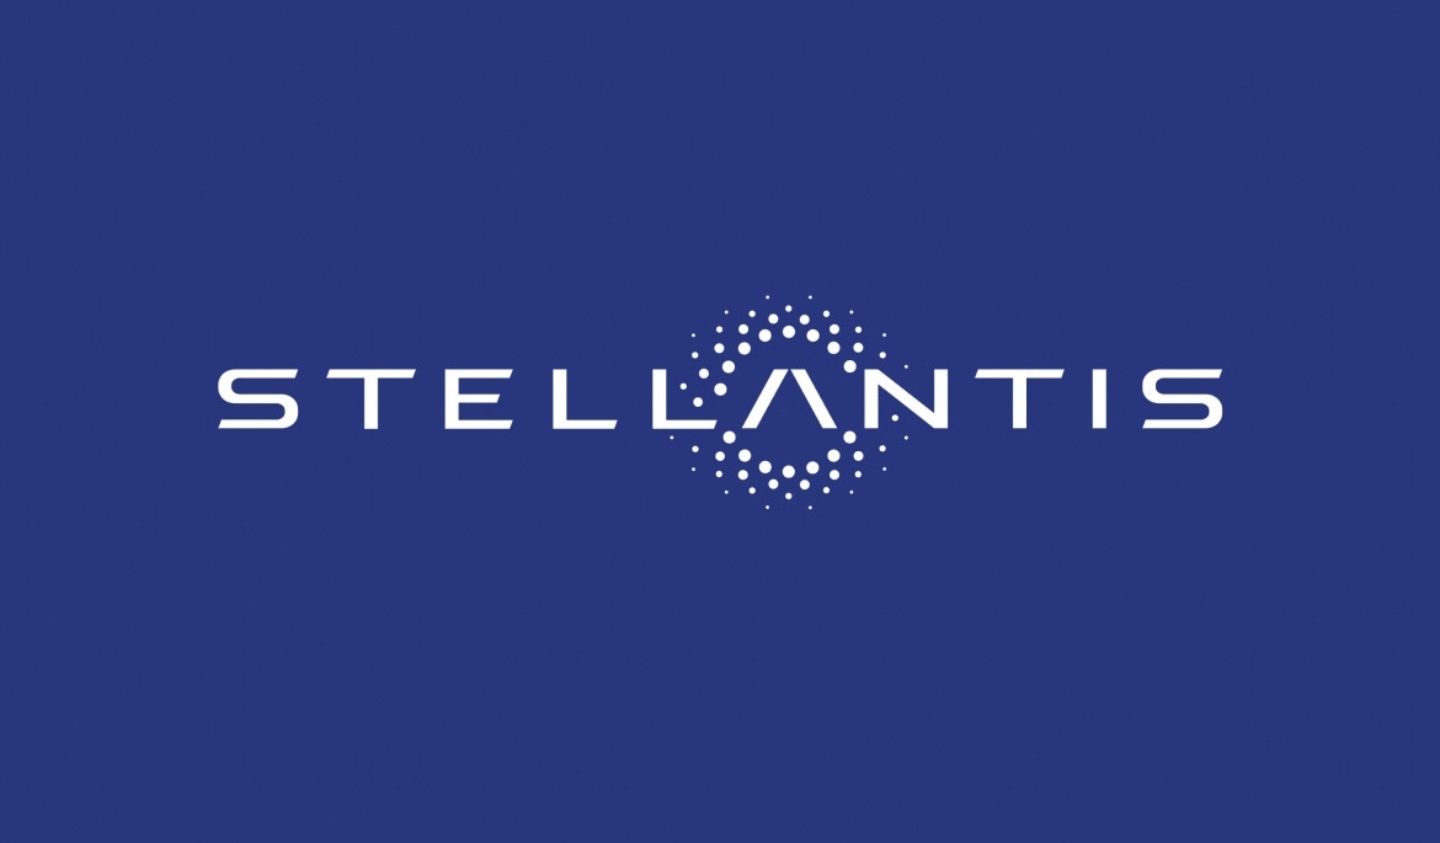 خلال الاحتفال بمرور عام على تأسيسها Stellantis تعمل على تسريع التحول إلى شركة تكنولوجيا  التنقل المستدام